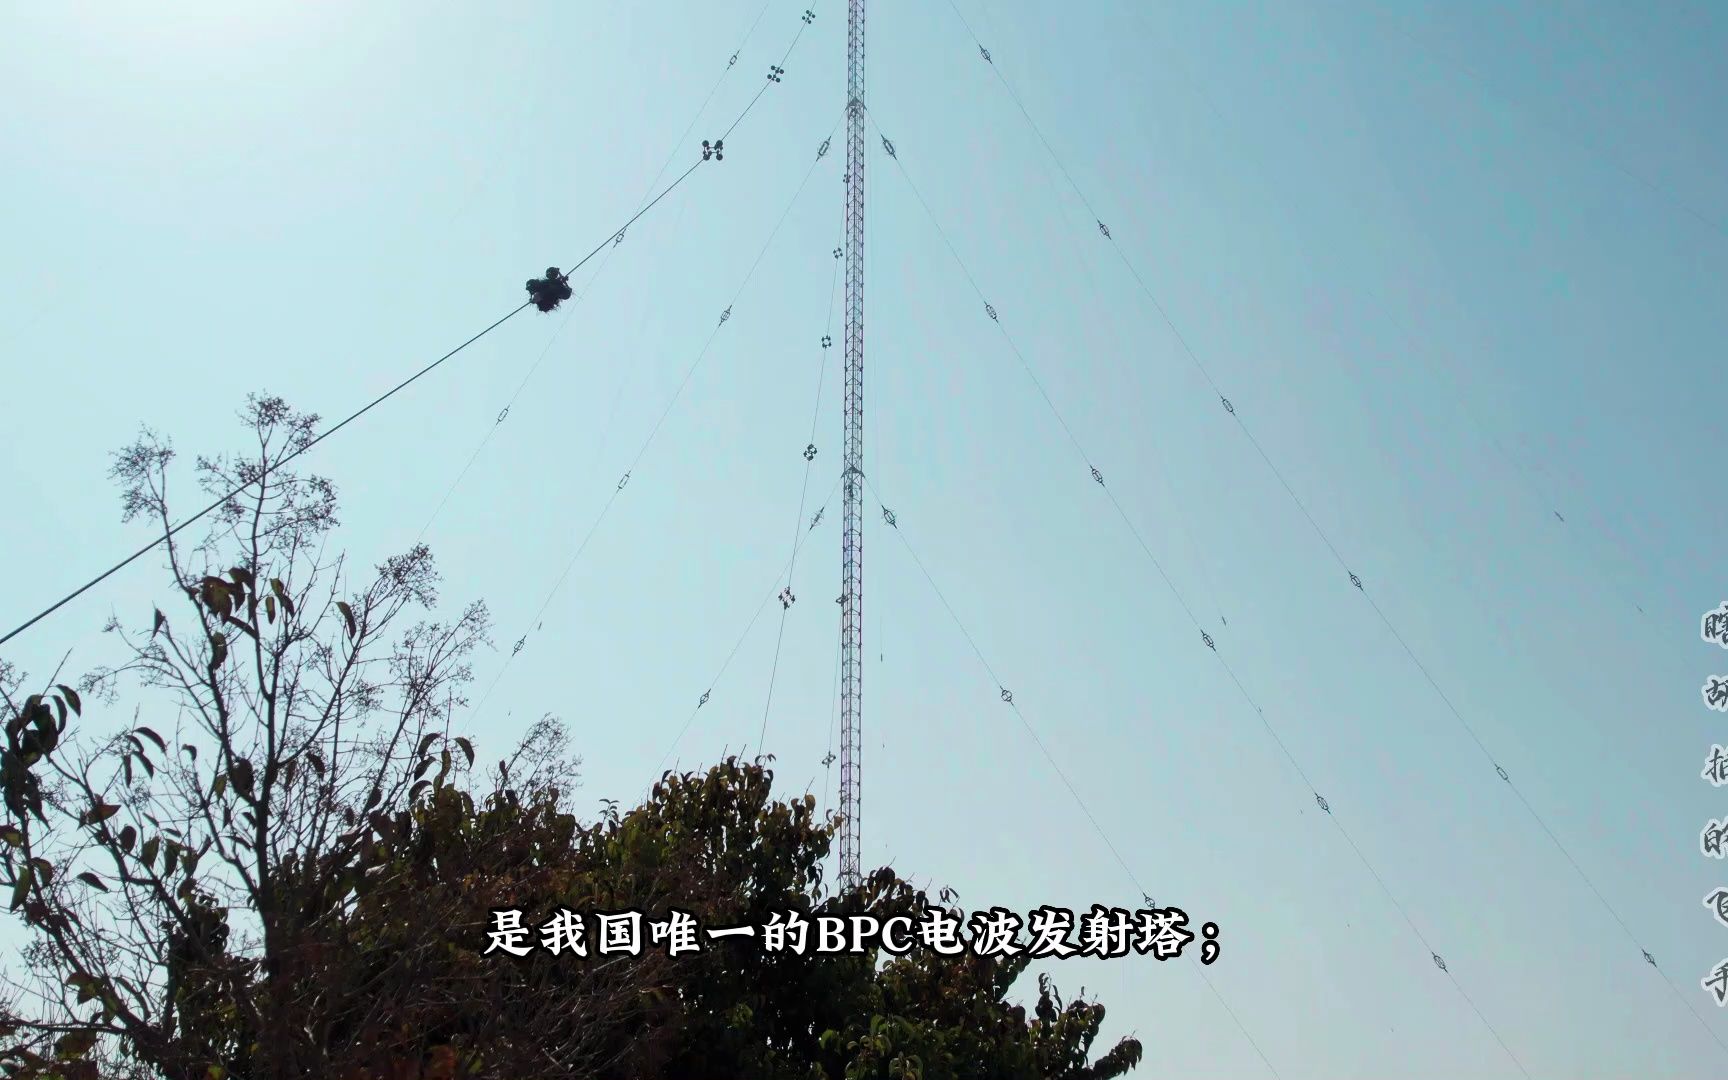 bpc电波发射塔 位于河南省商丘市虞城县,是我国唯一的bpc电波发射塔